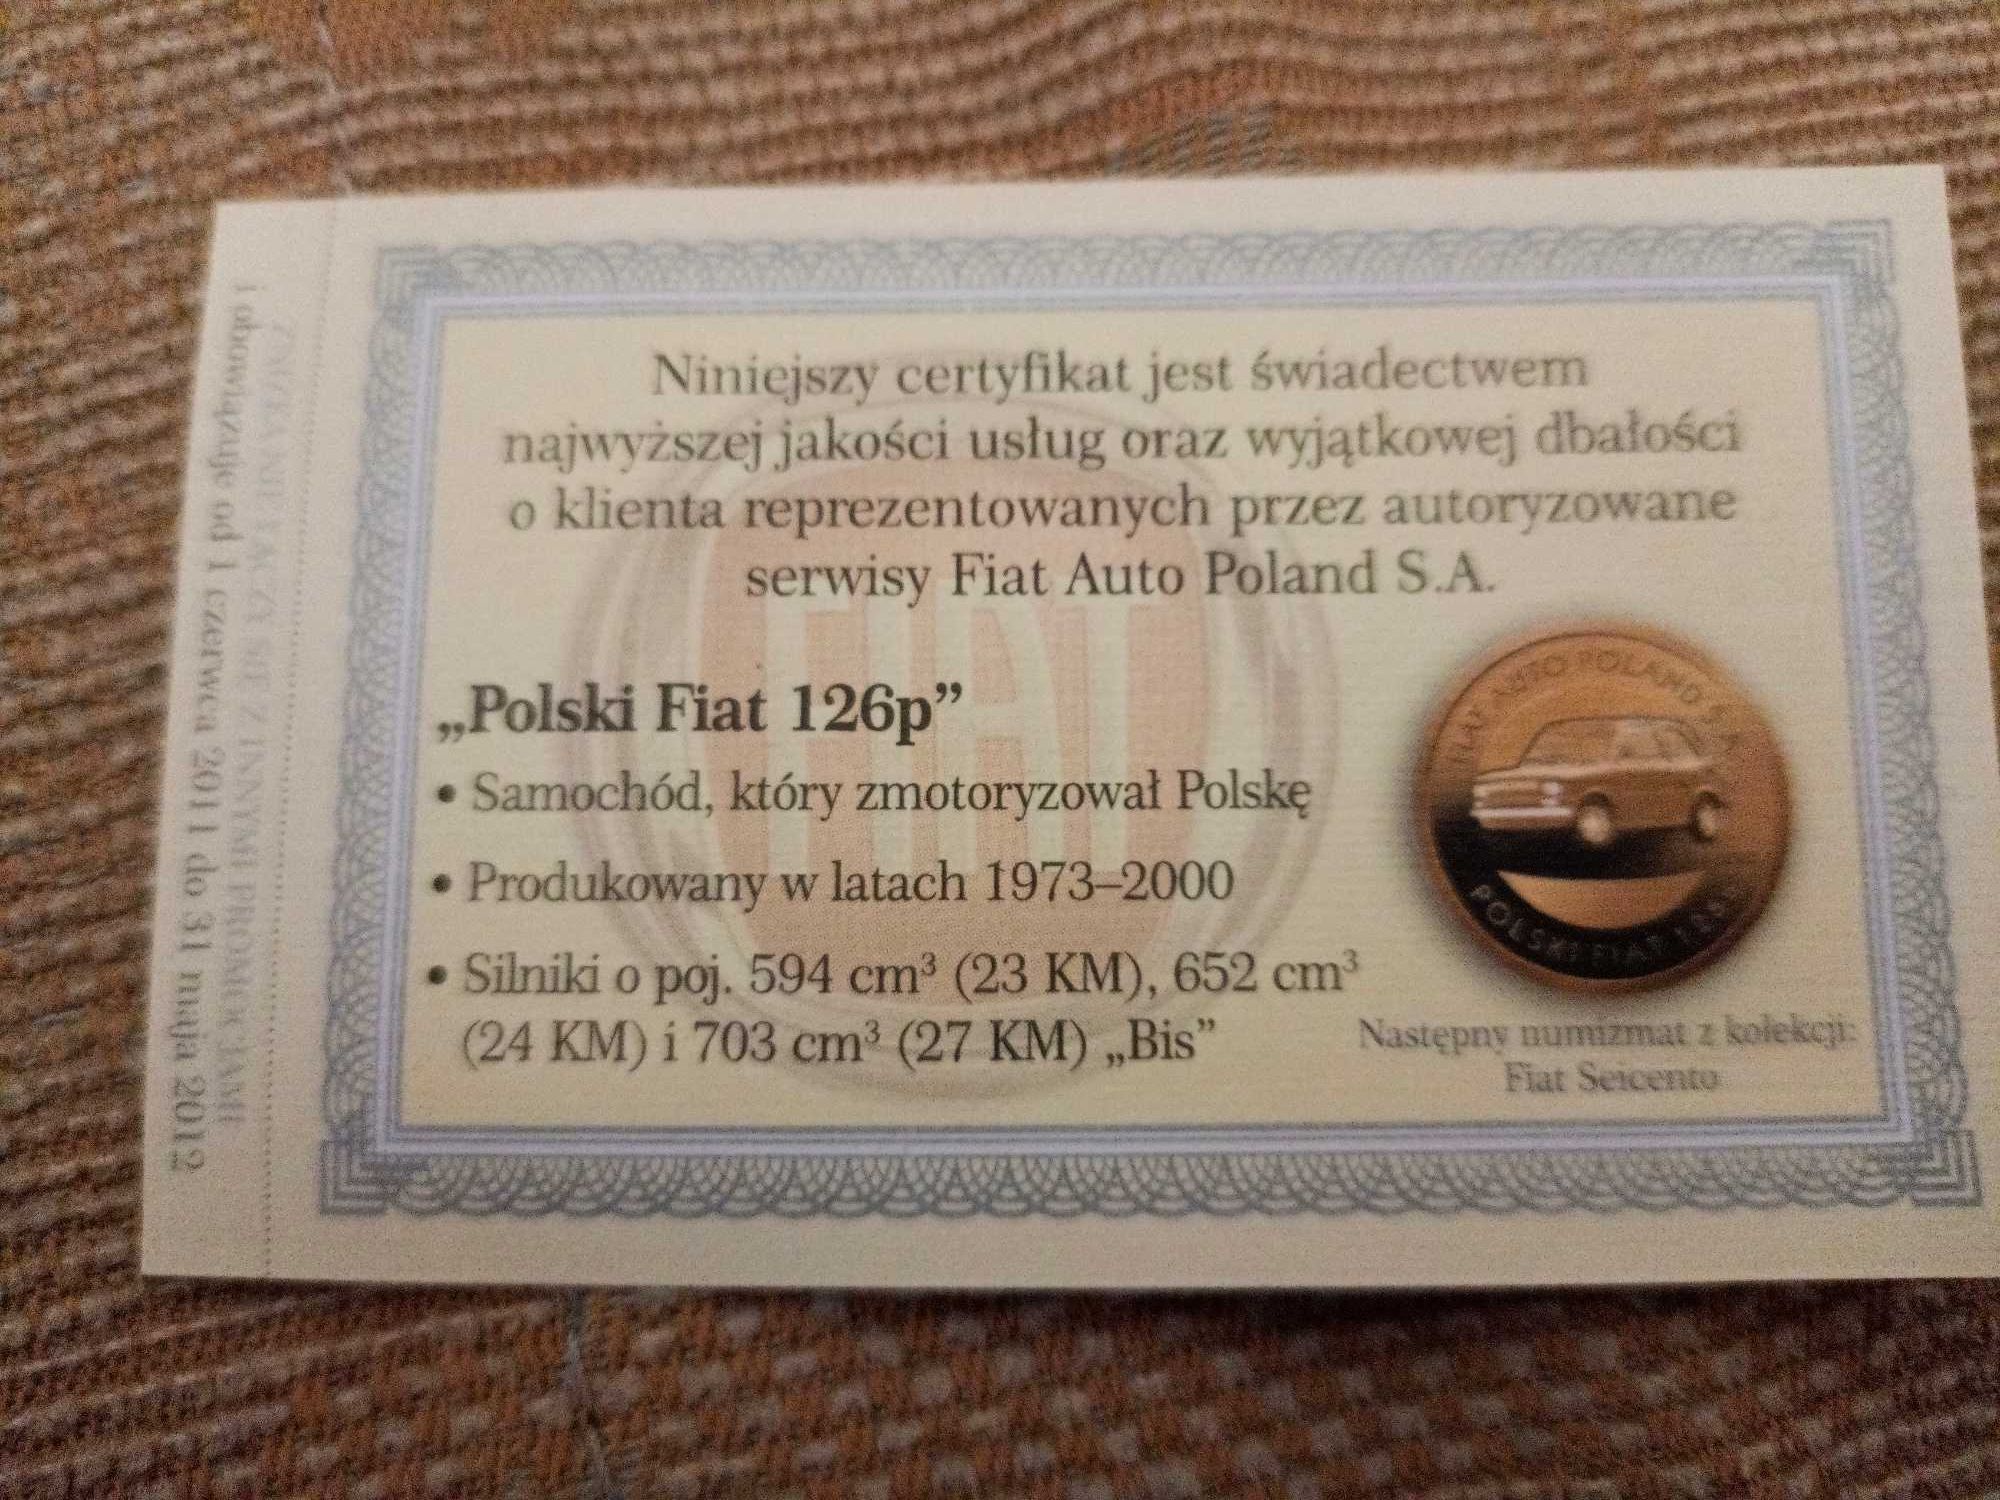 Polski Fiat 126p - Numizmat z certyfikatem